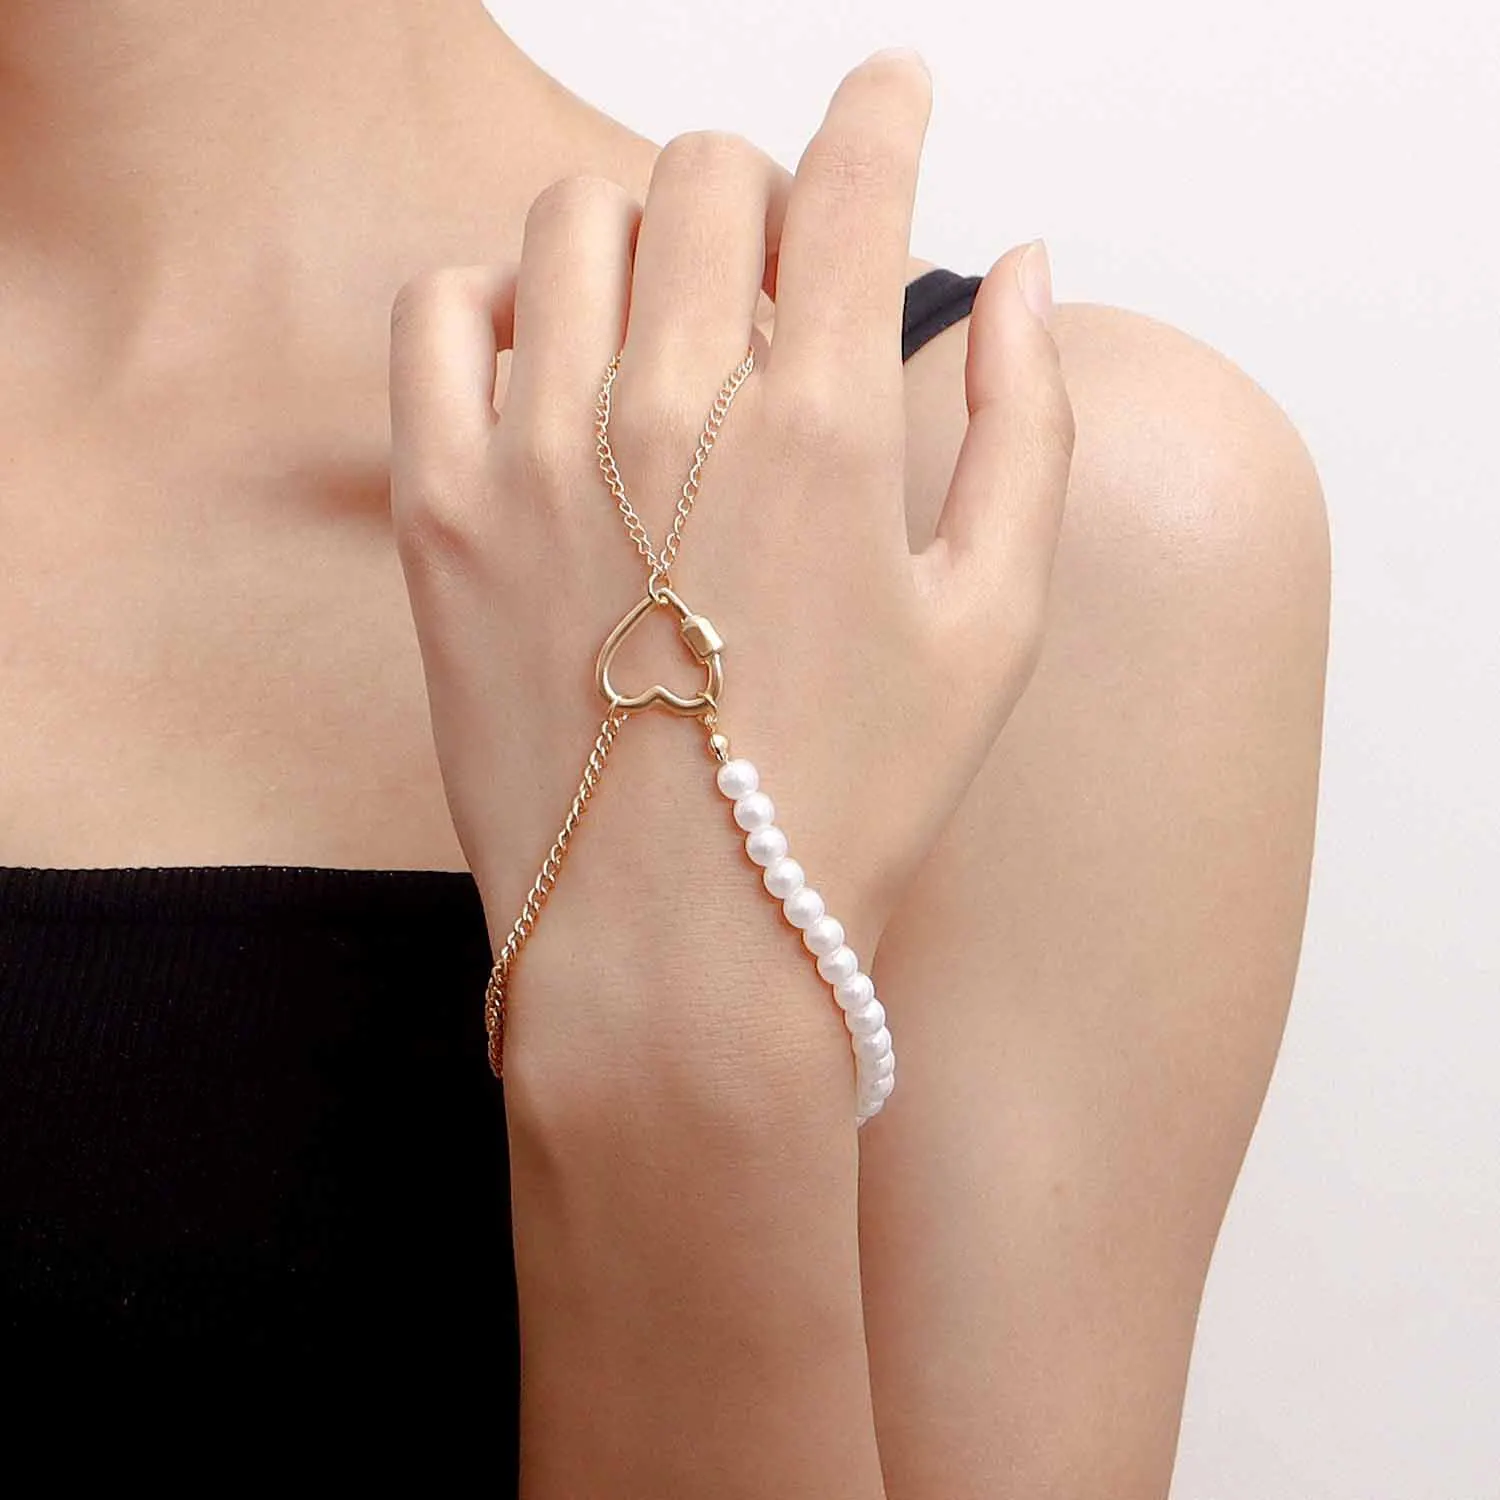 Buy Femnmas Golden Star Cute Ring Bracelet Online